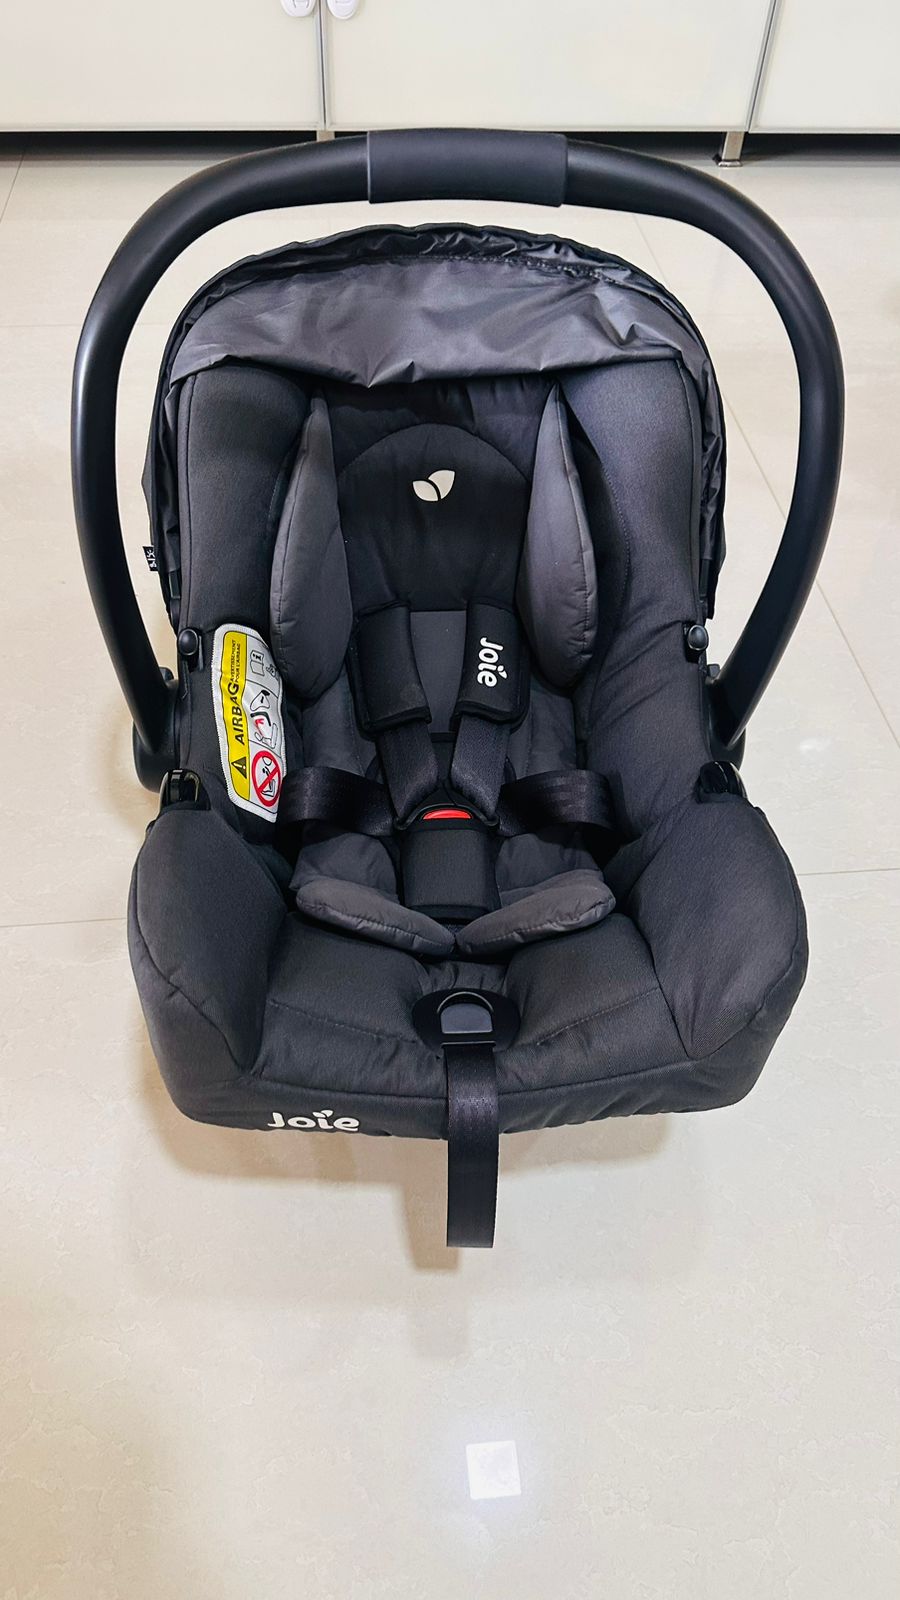 Joie GEMM Group 0+ Infant Car Seat